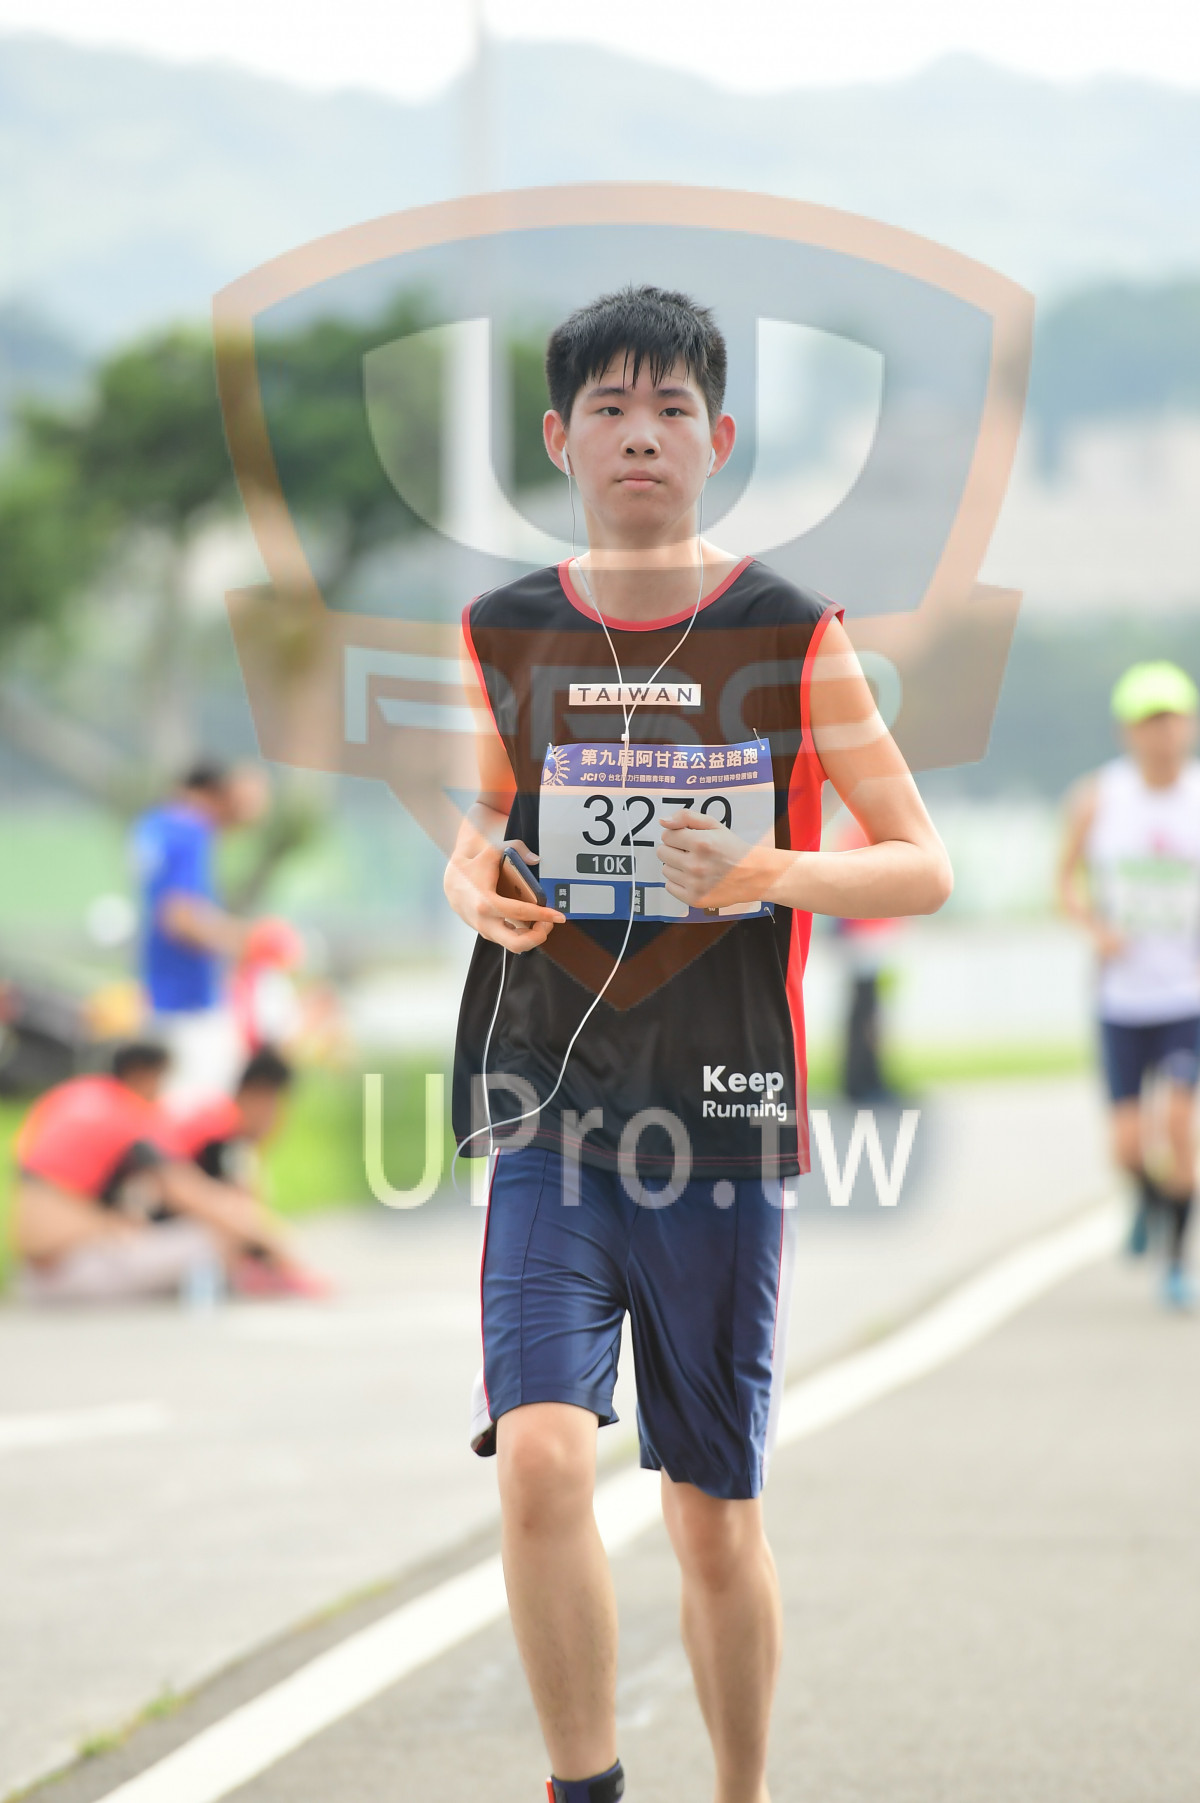 TAIWAN,,320,10K,Keep,Running|終點1|中年人